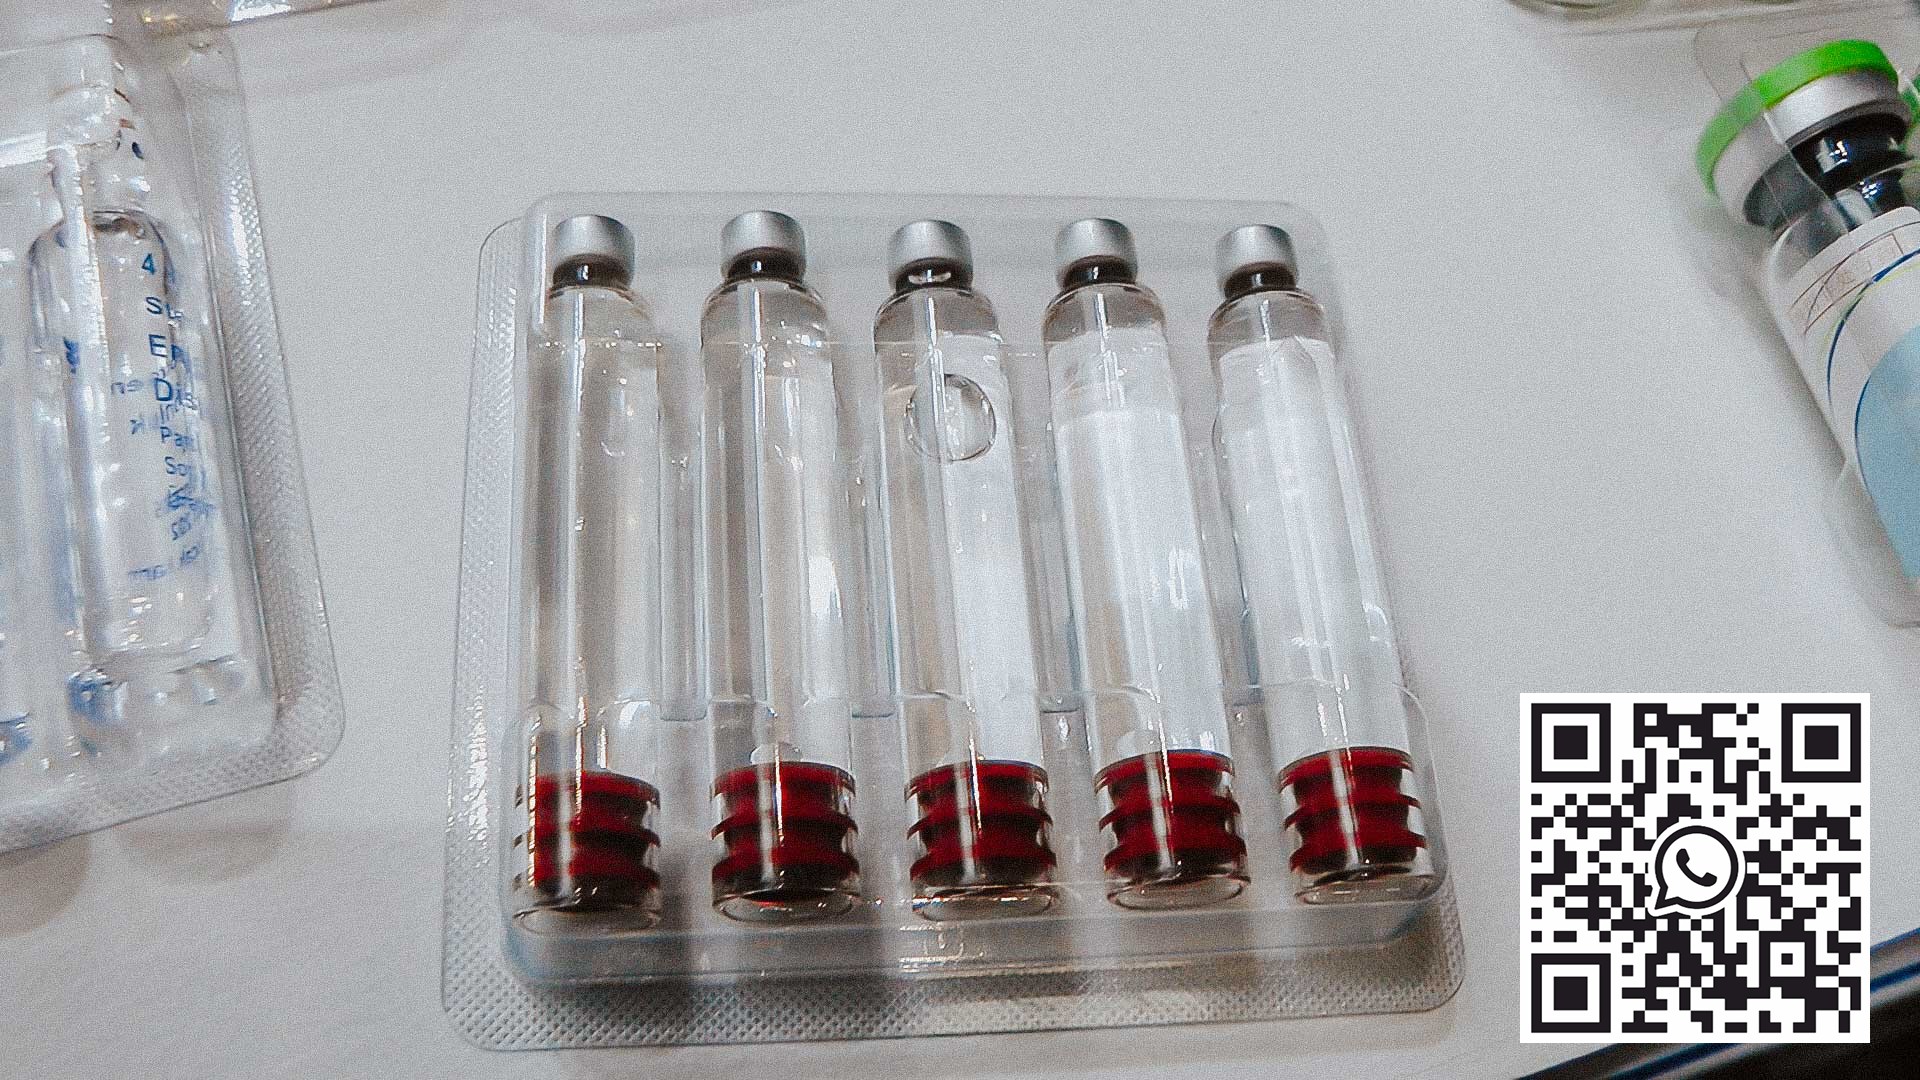 Équipement pour emballer les ampoules en verre et les bouteilles de pénicilline sous blister PVC et aluminium